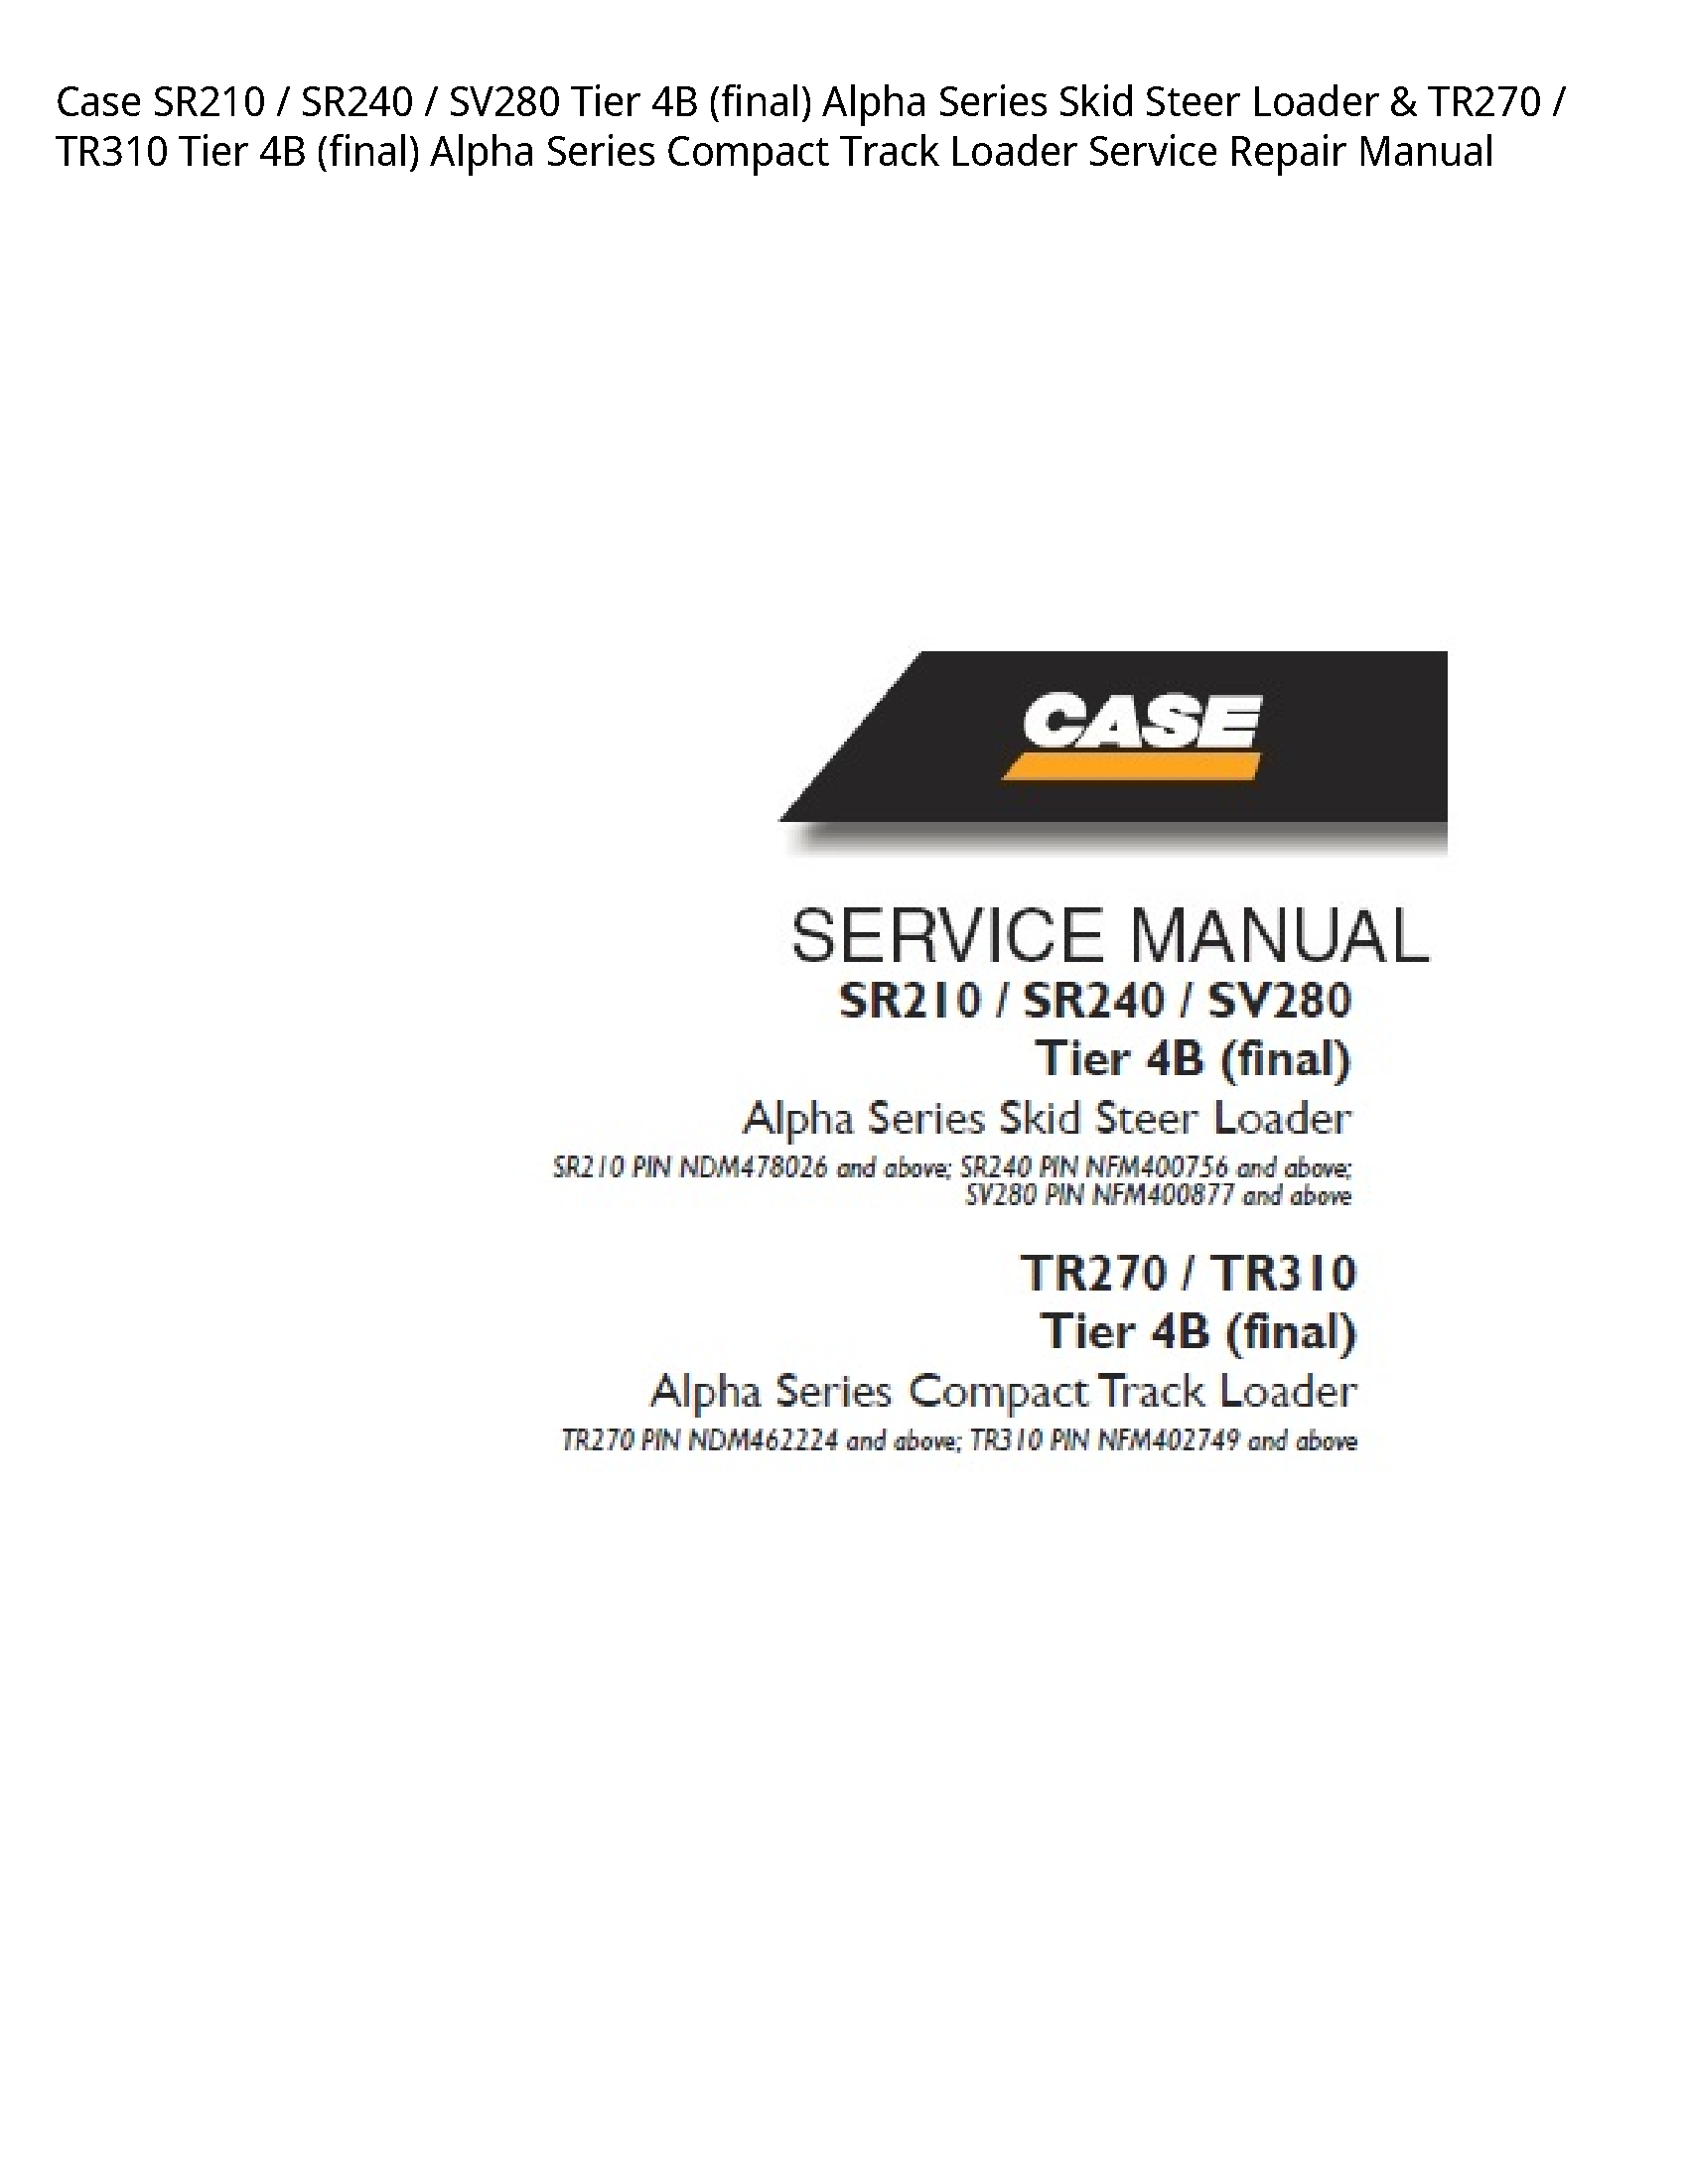 Case/Case IH SR210 Tier (final) Alpha Series Skid Steer Loader Tier (final) Alpha Series Compact Track Loader manual